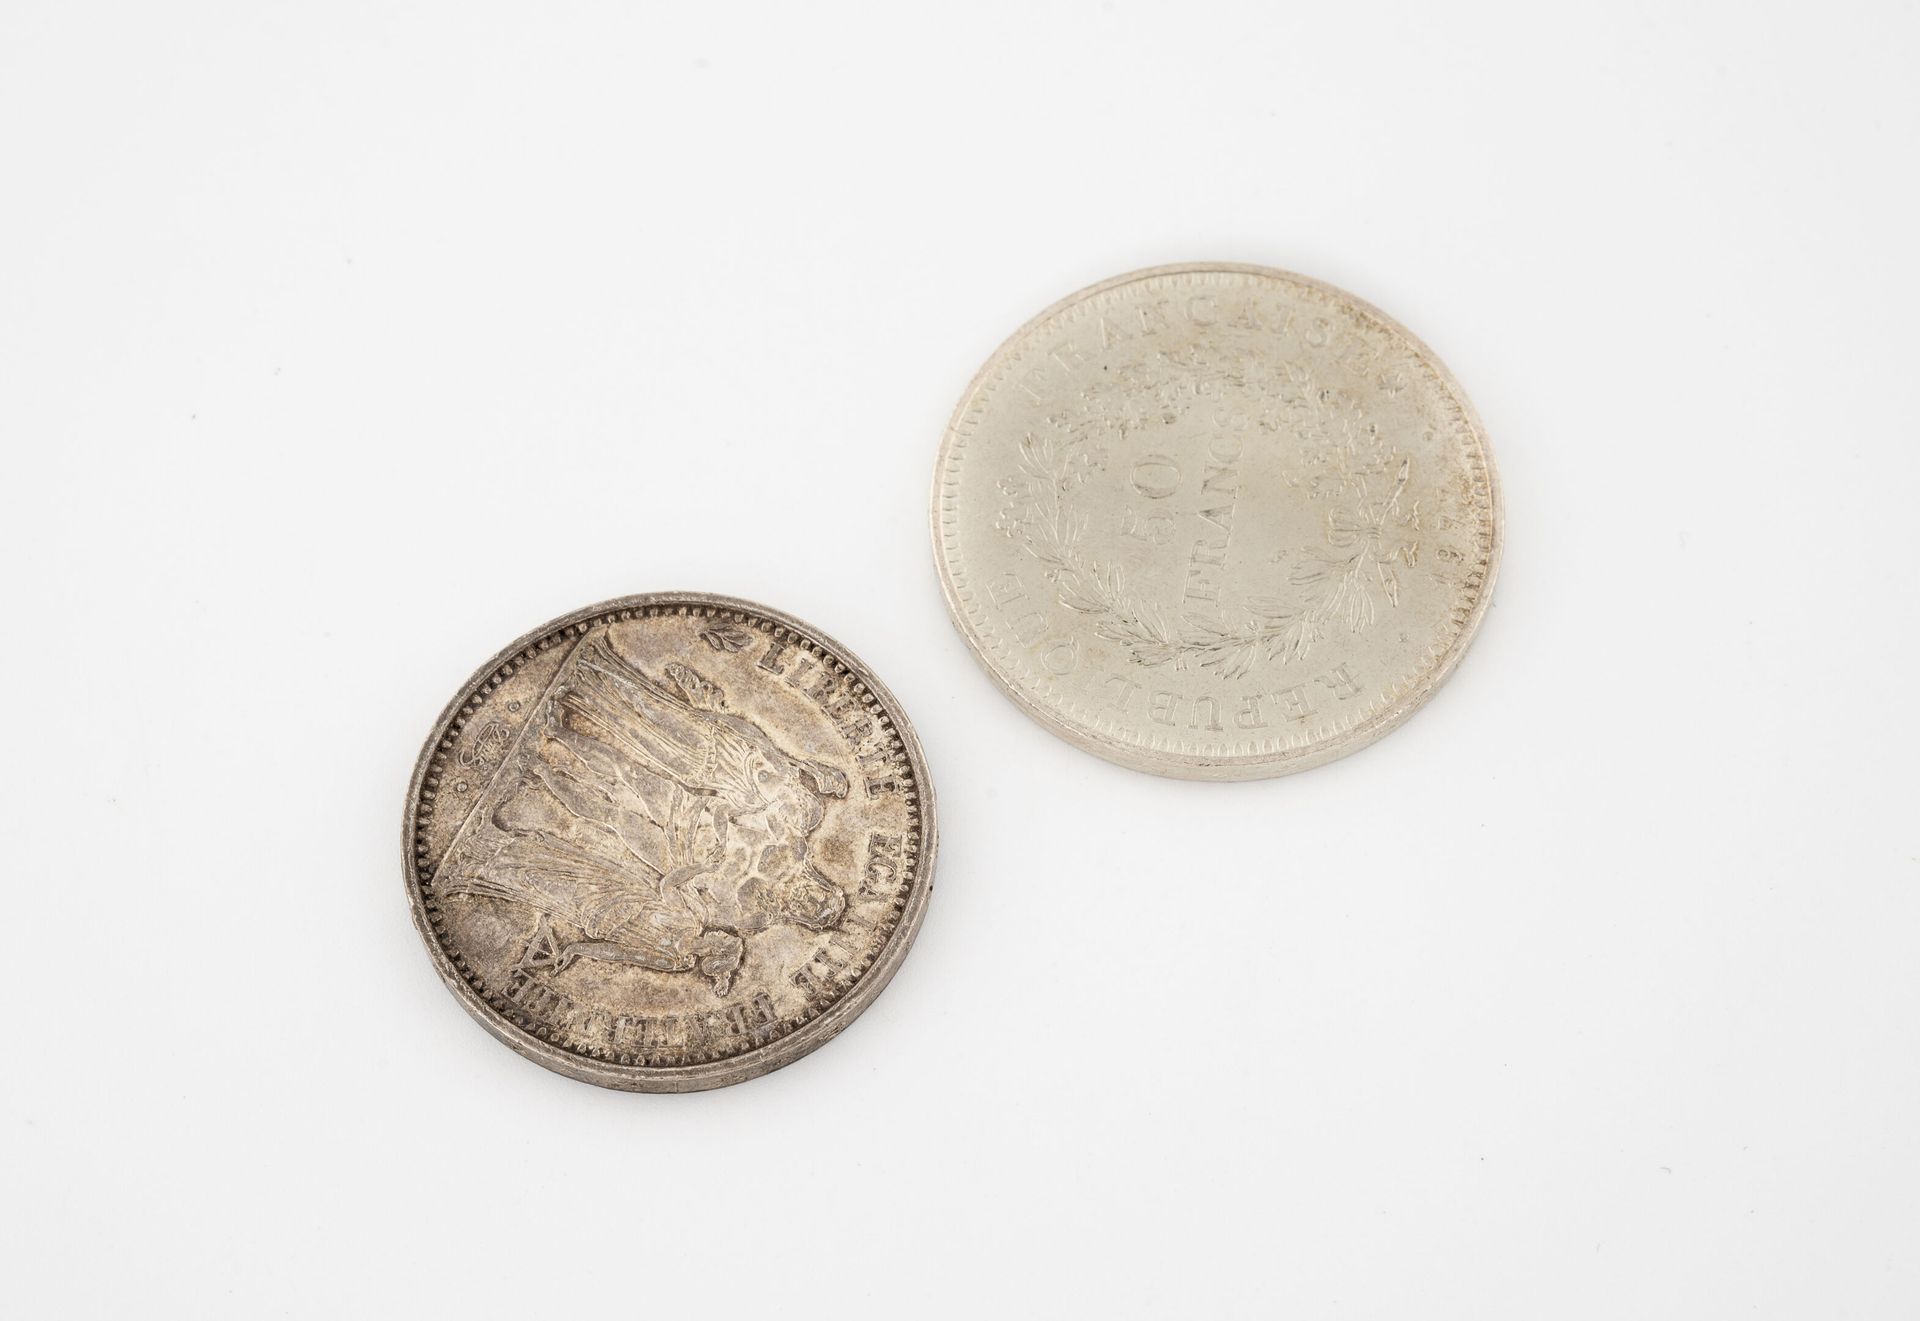 France 一批银币包括:

- 50法郎类型的赫拉克勒斯主持自由与平等的会议1977年。

重量：30克。

- 10法郎的海格力斯字体，主持自由与平等的会&hellip;